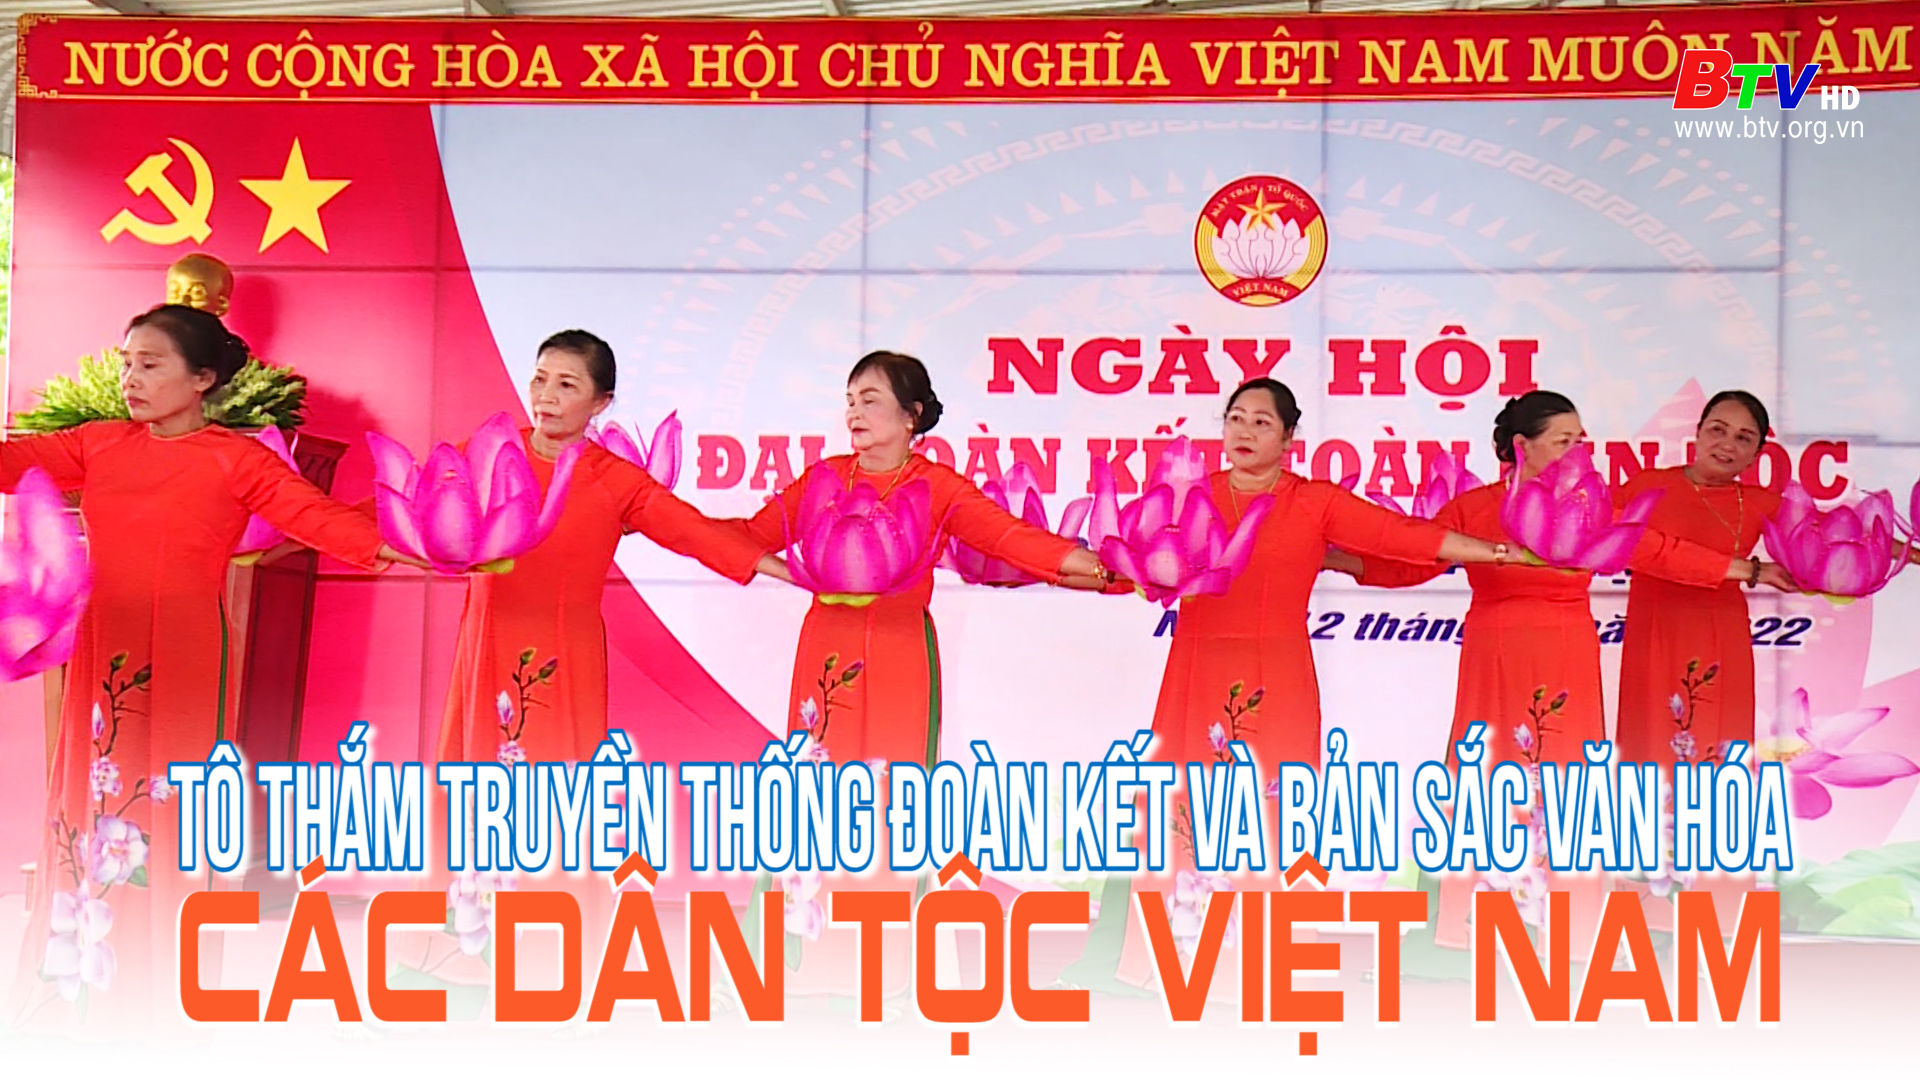 Tô thắm truyền thống đoàn kết và bản sắc văn hóa các dân tộc Việt Nam